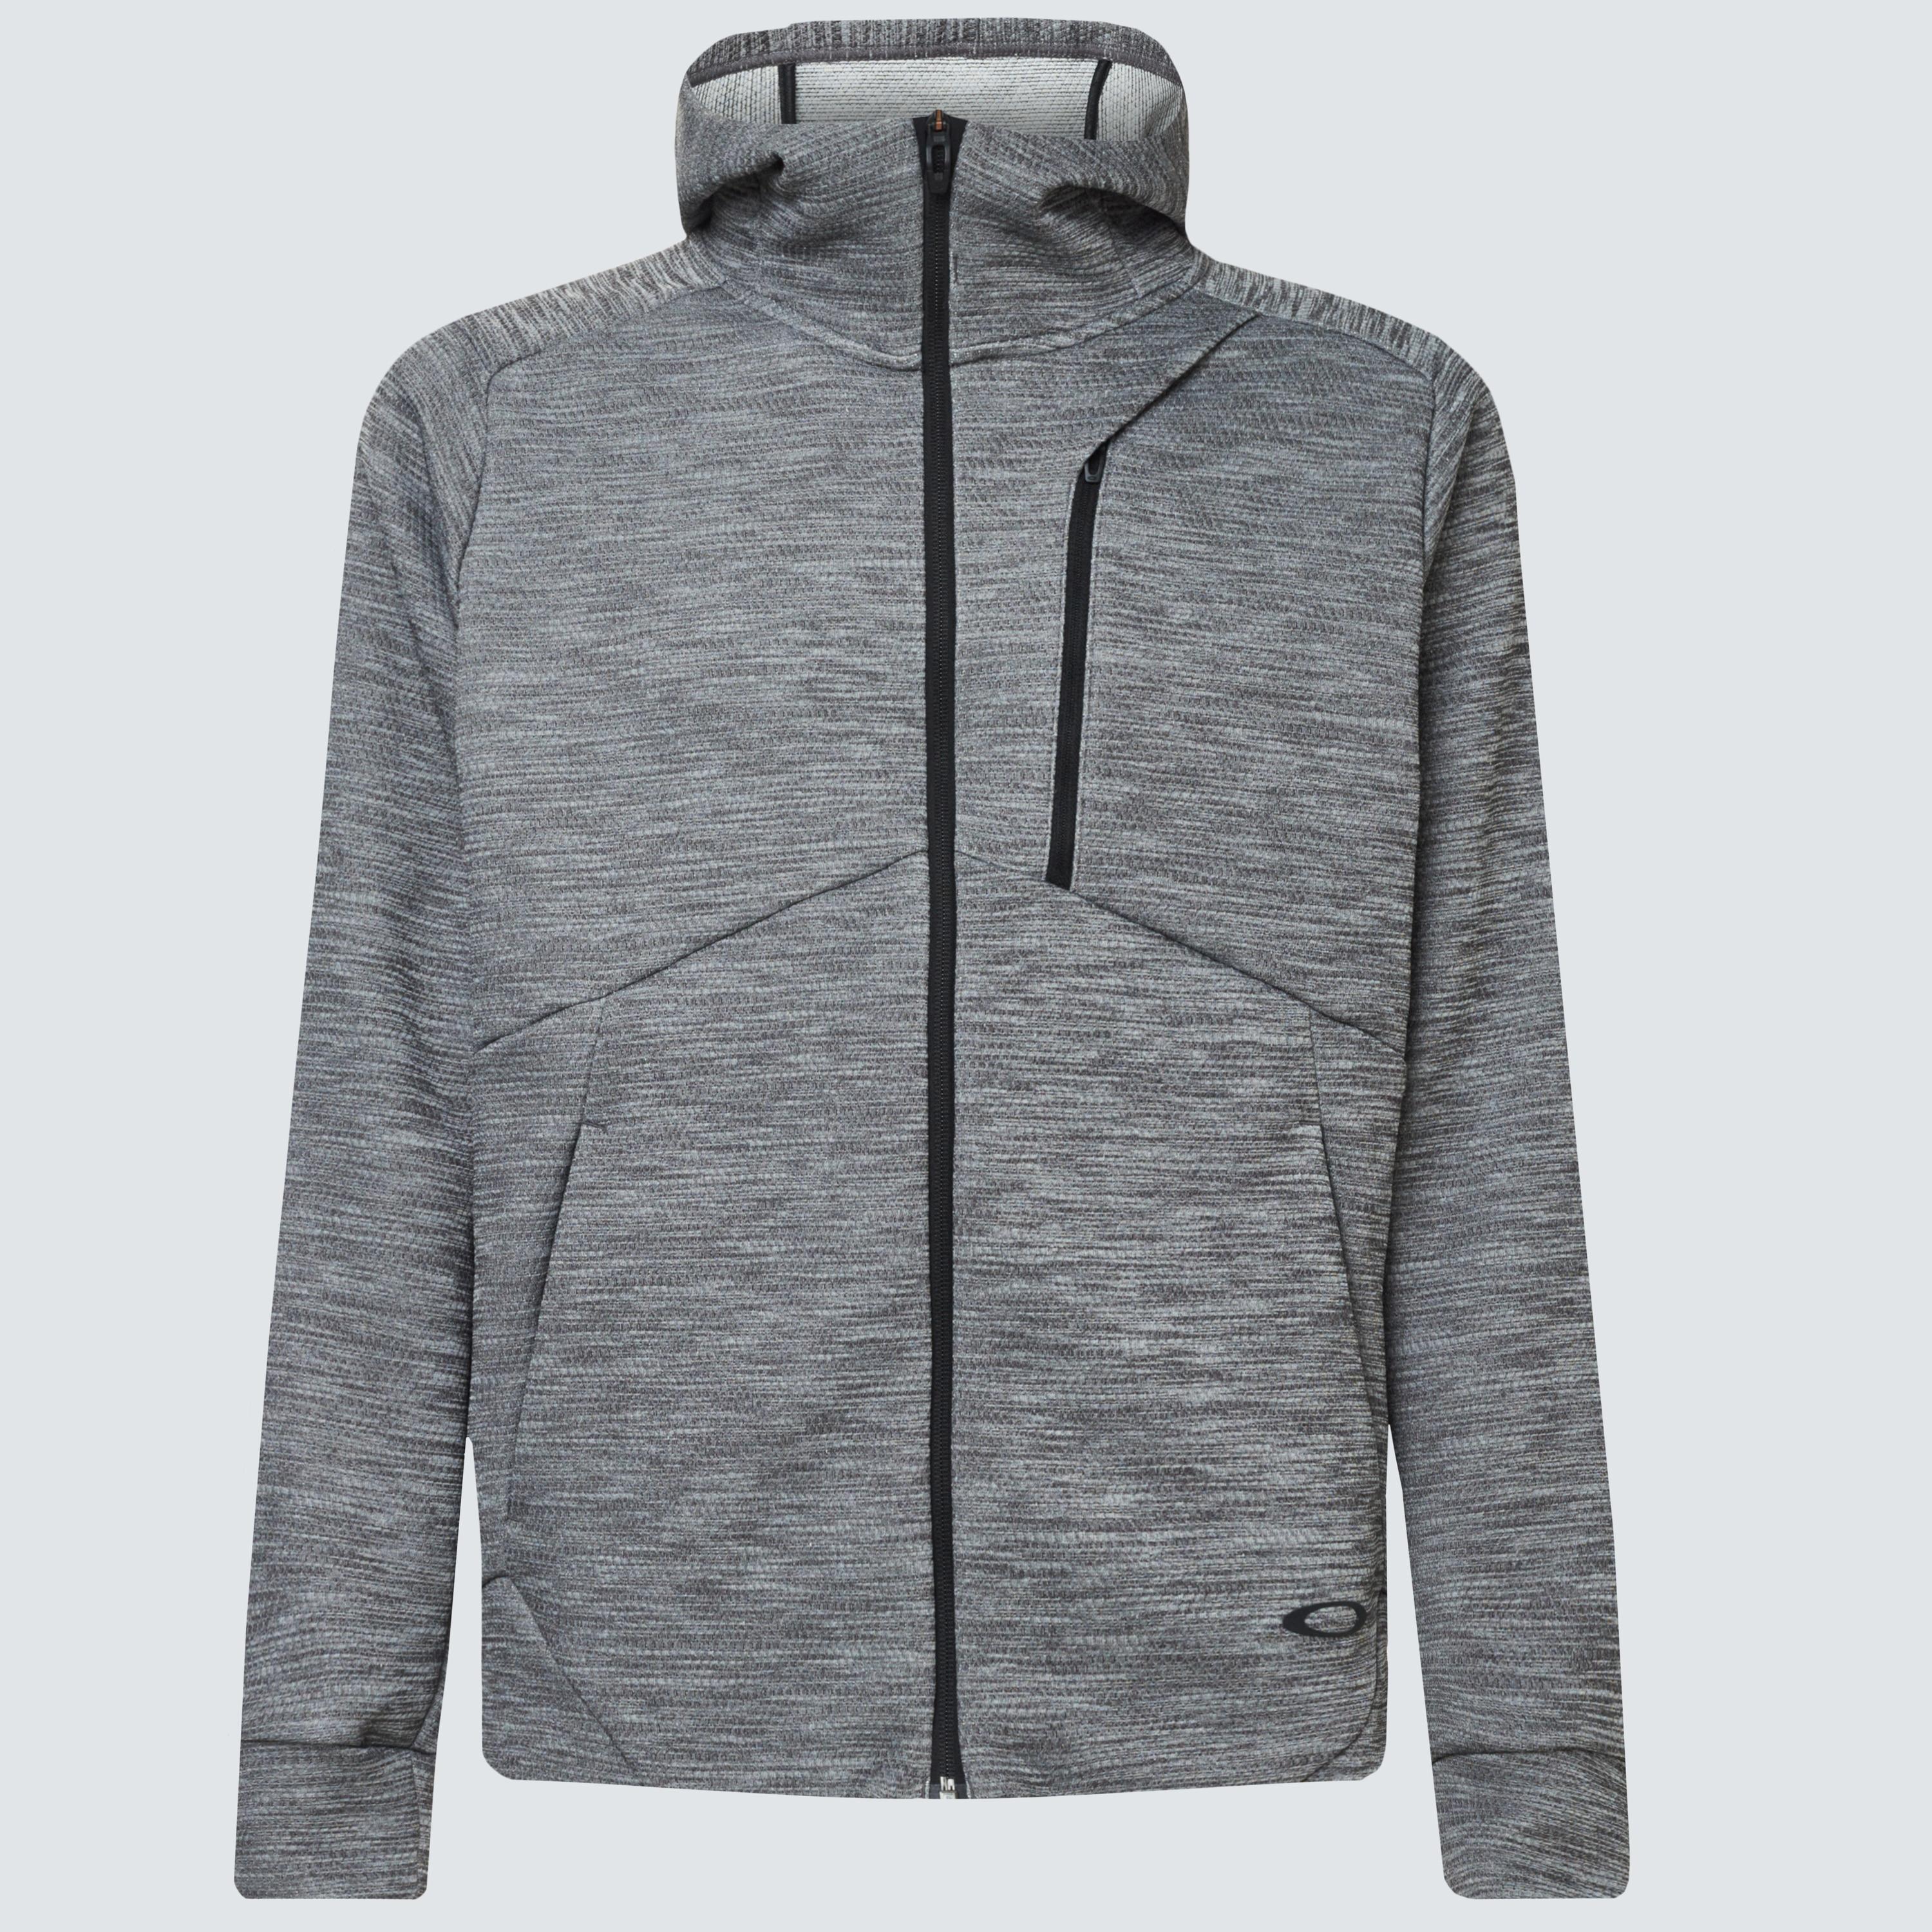 Oakley Enhance Grid Fleece Jacket 10.7 in Gray for Men - Lyst